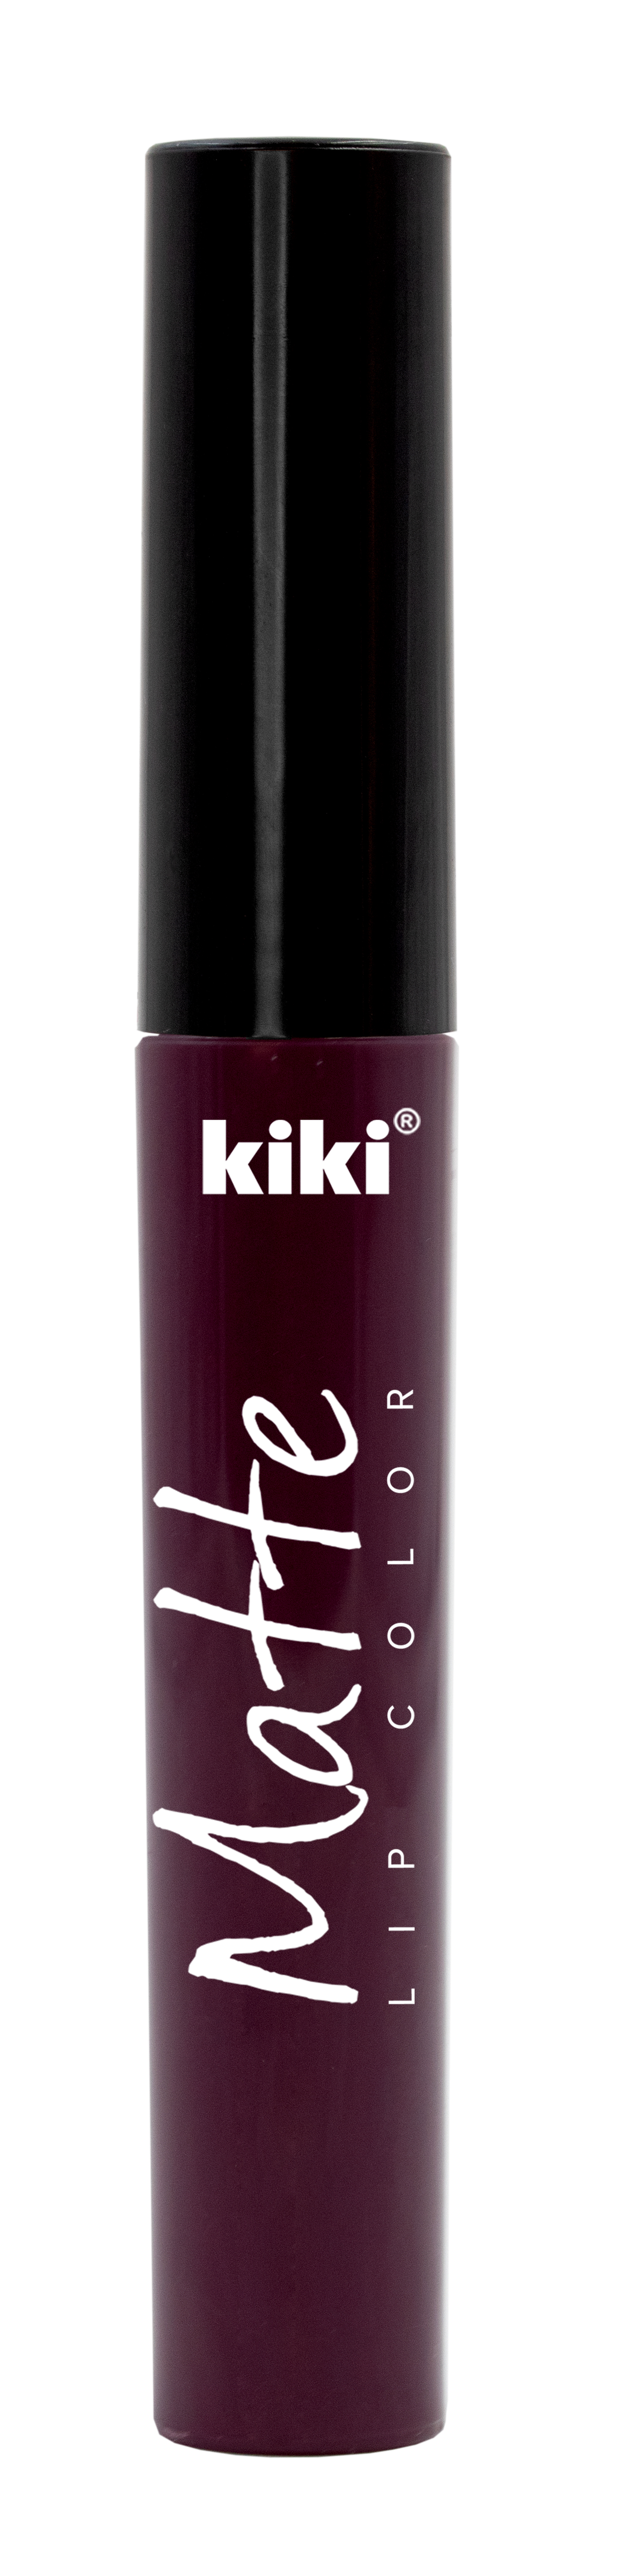 Жидкая помада для губ KIKI Matte lip color 207 ультра-фиолетовый - фото 1